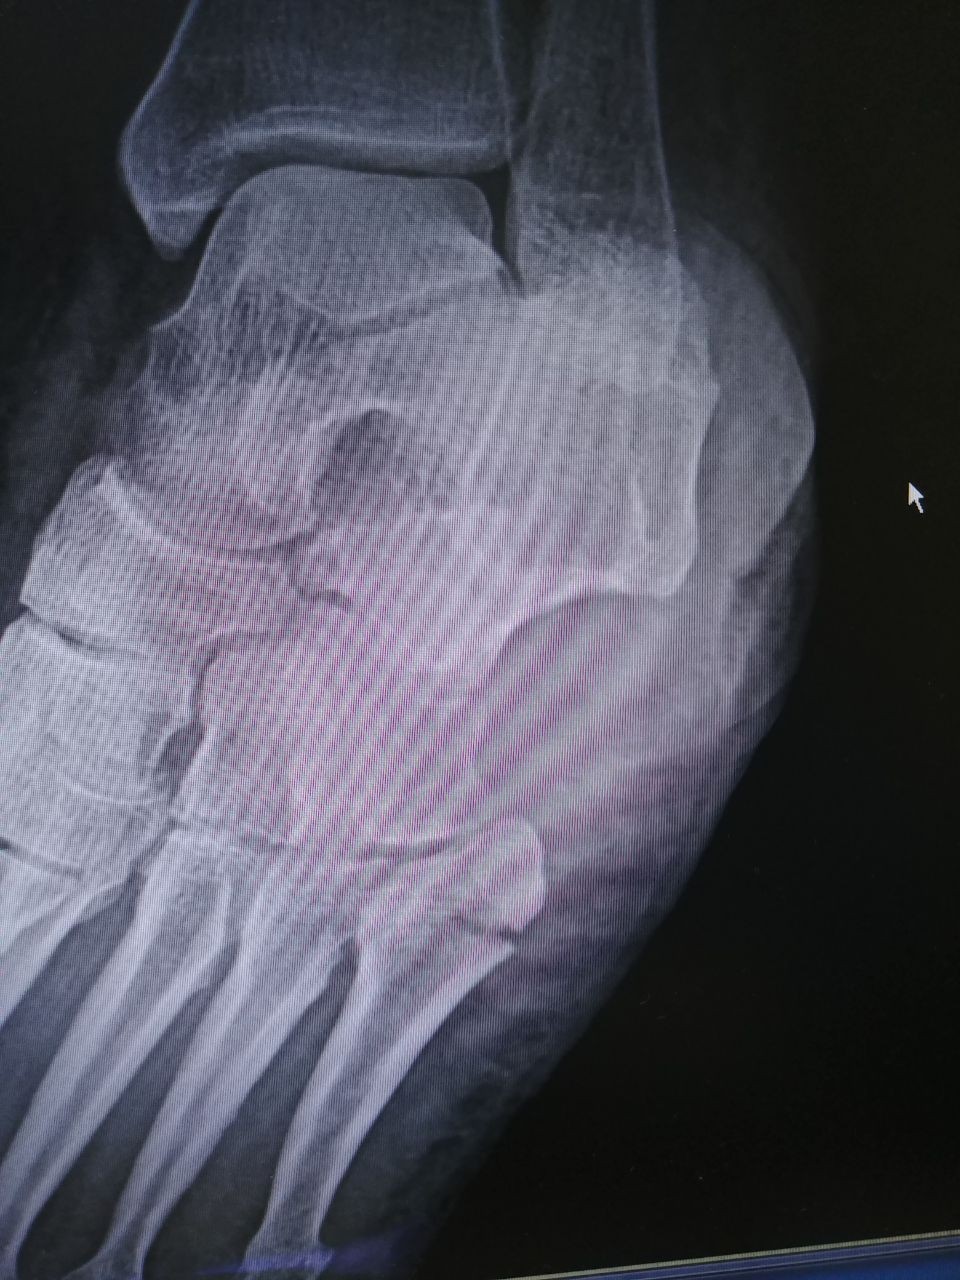 Перелом джонса 5 плюсневой кости фото